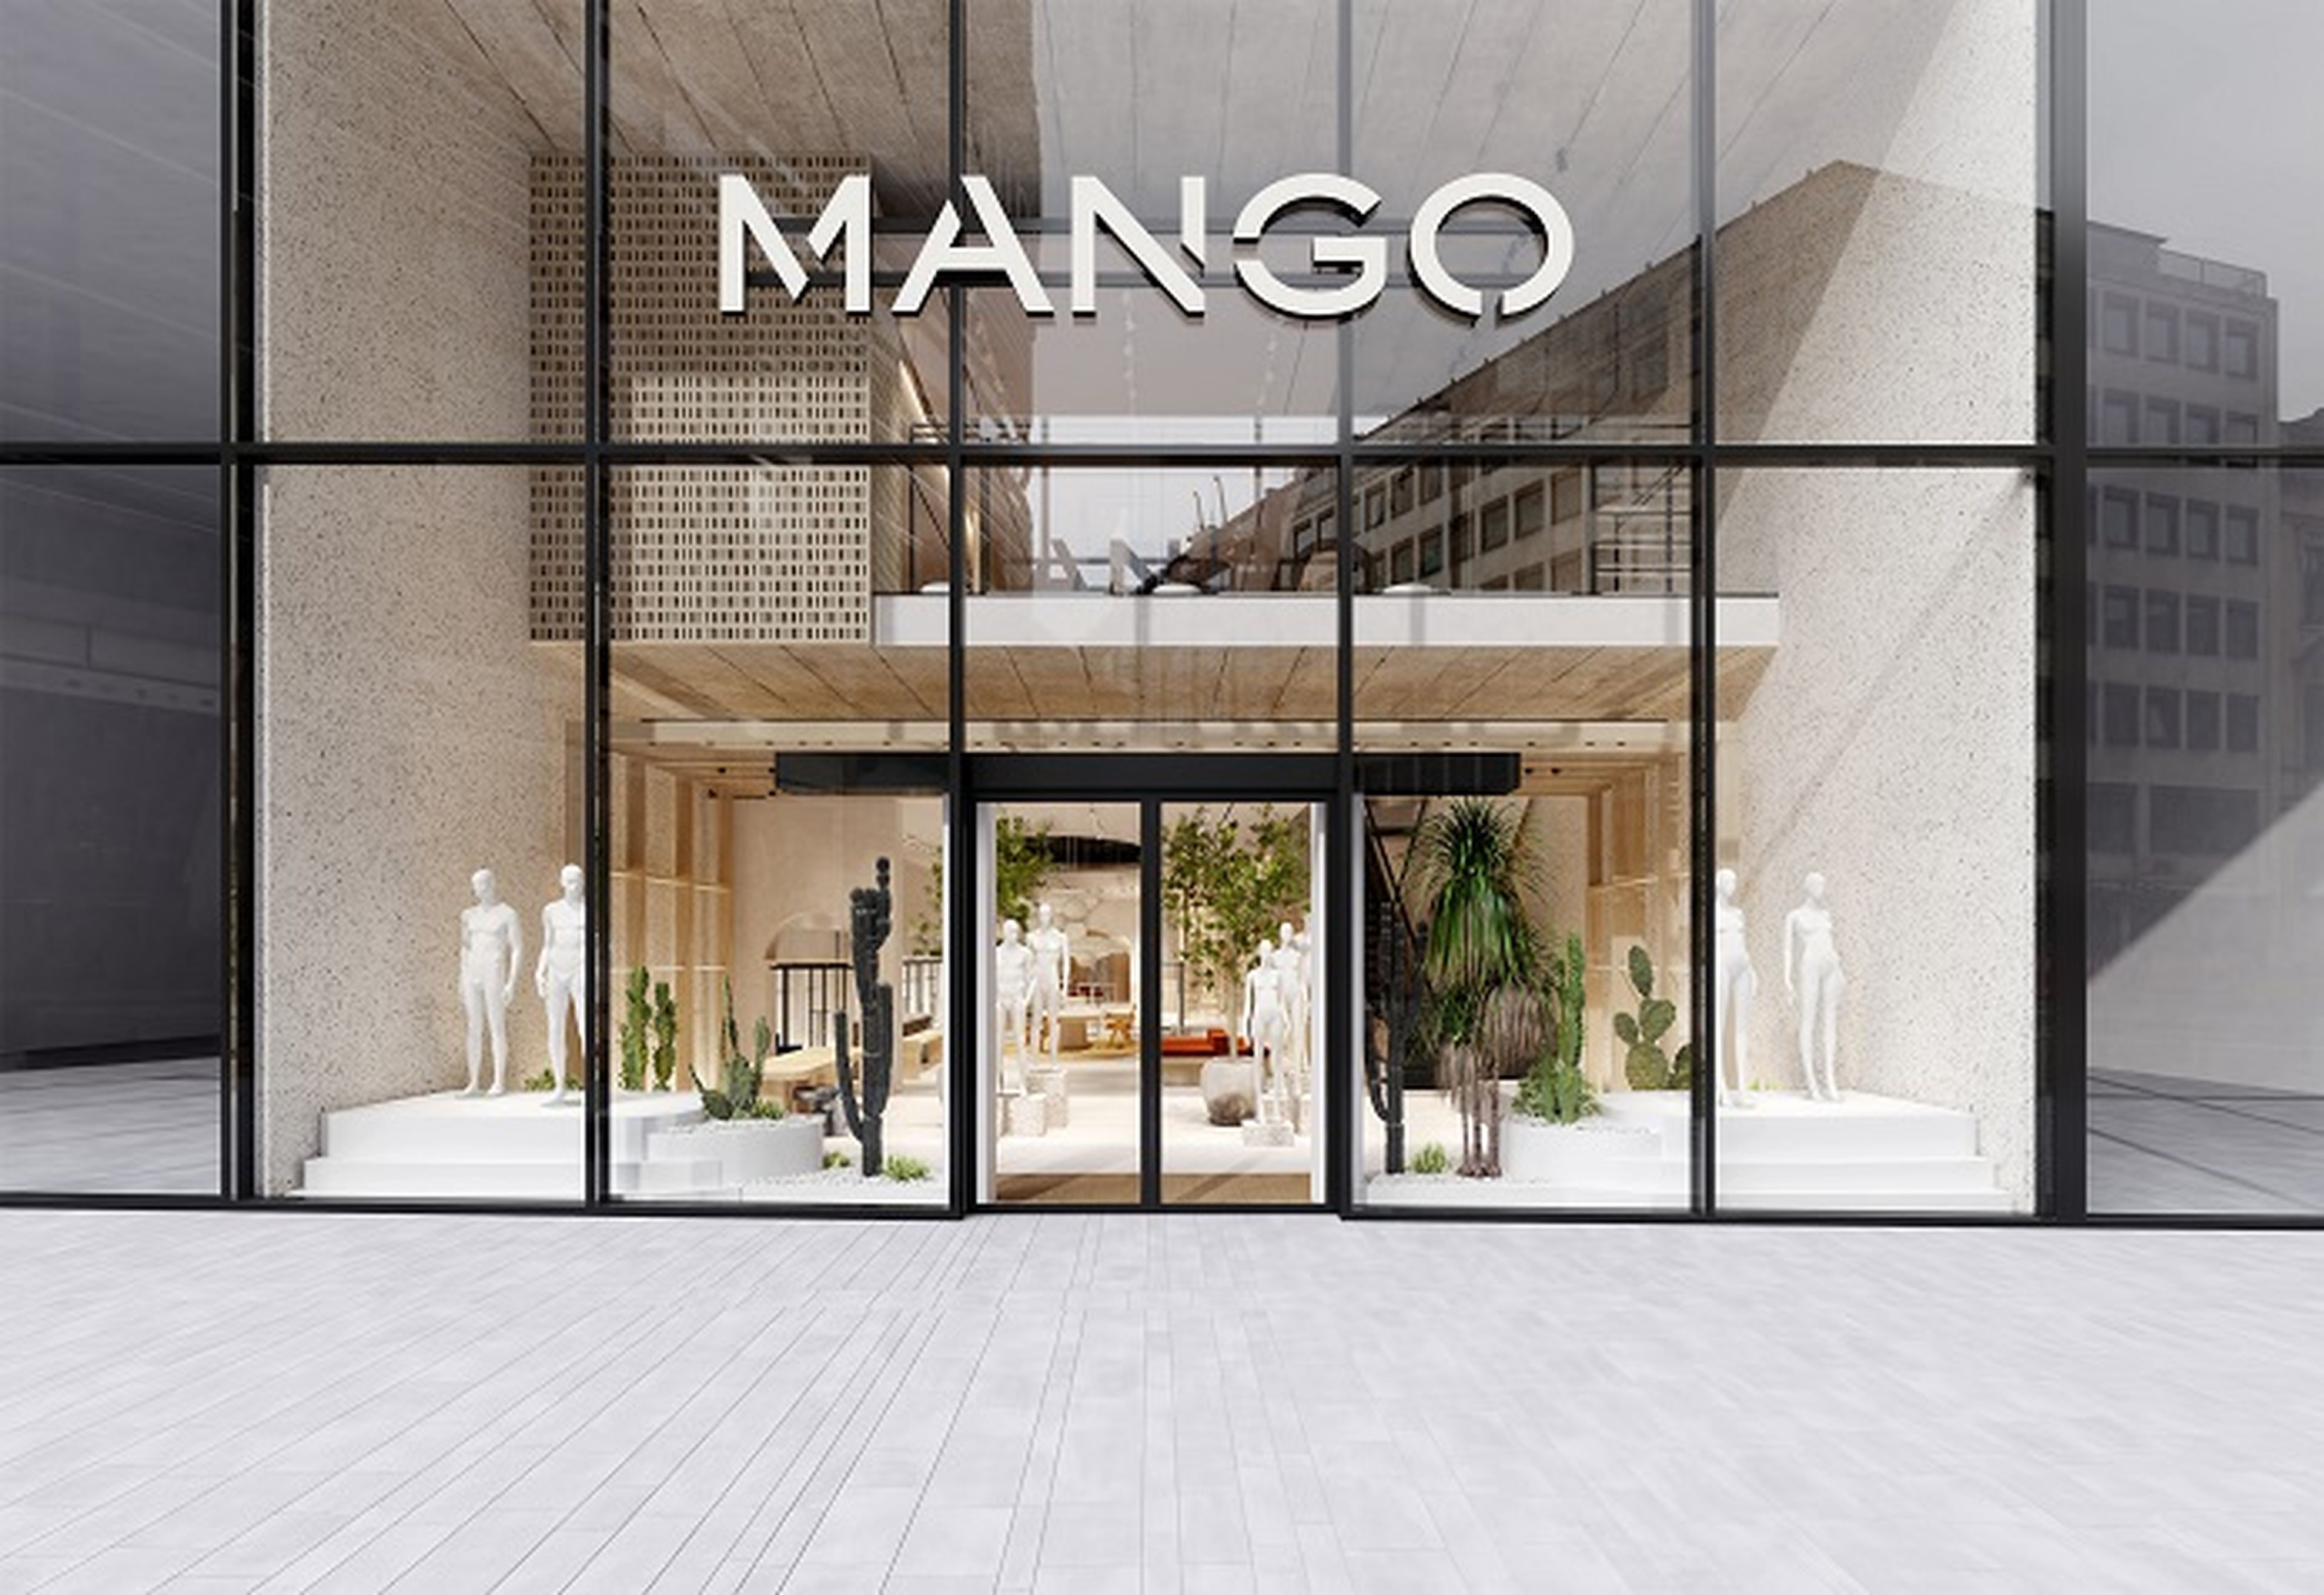 En imagen, una tienda Mango.